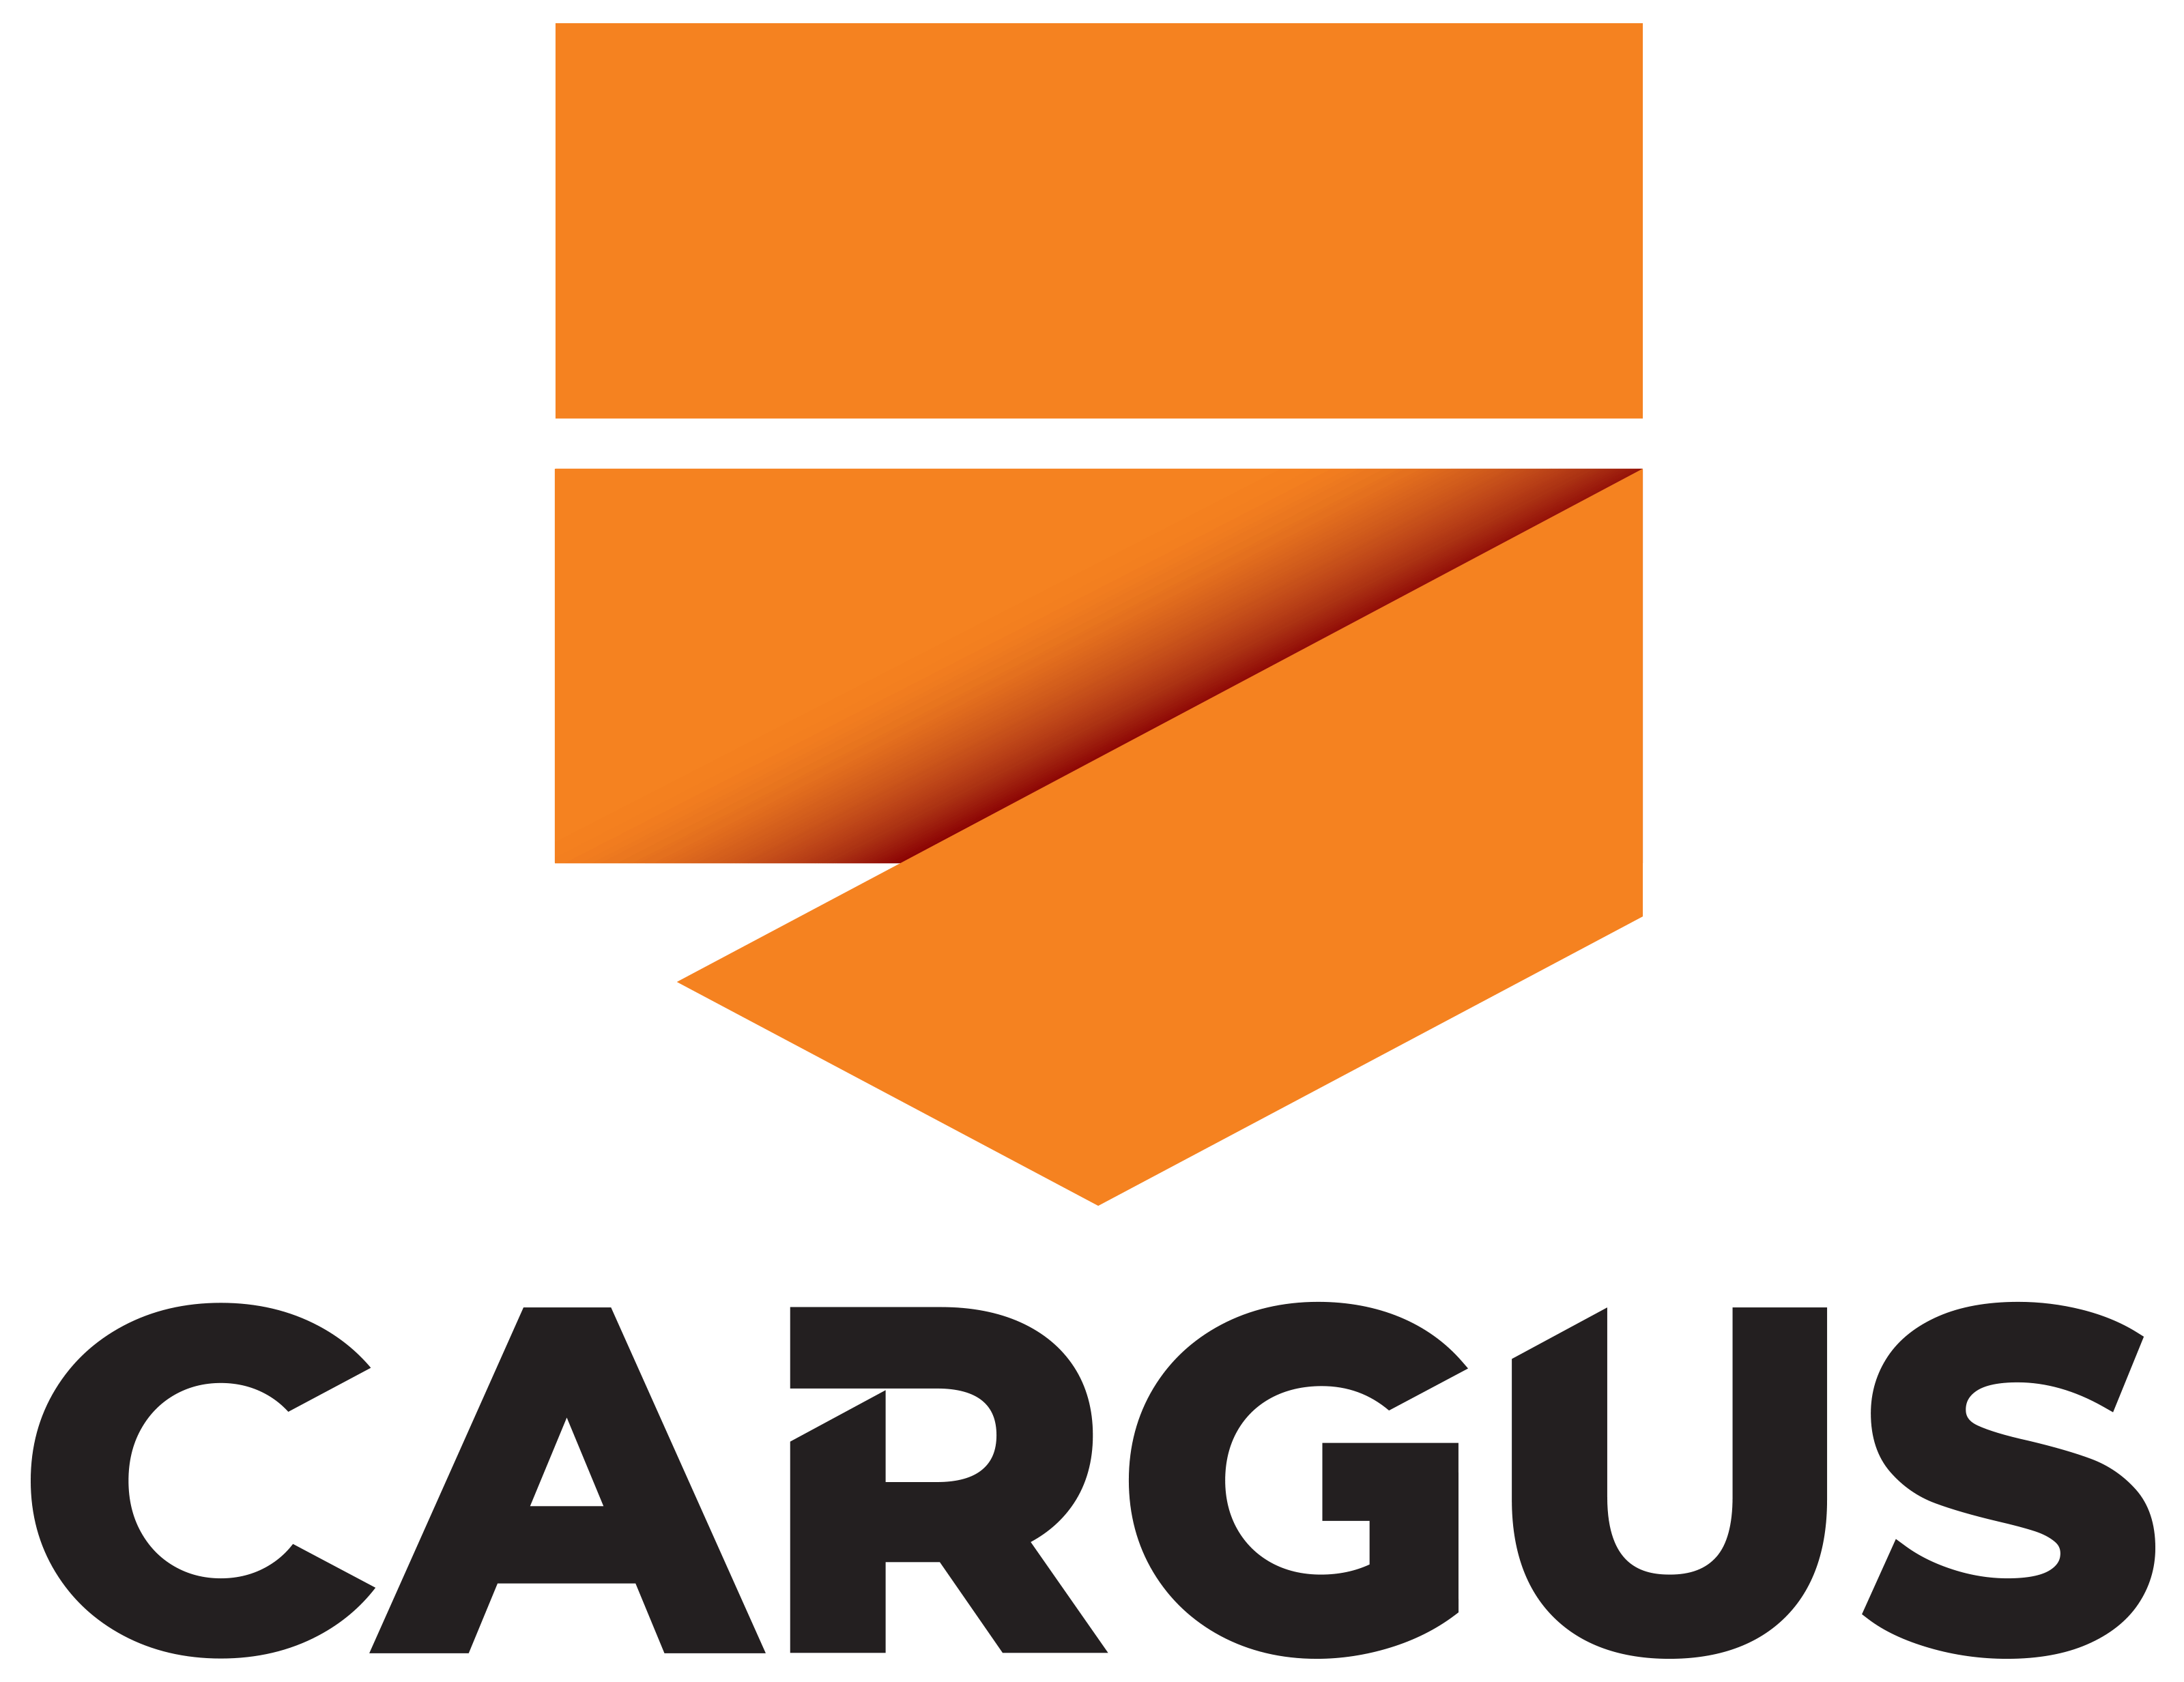 Cargus